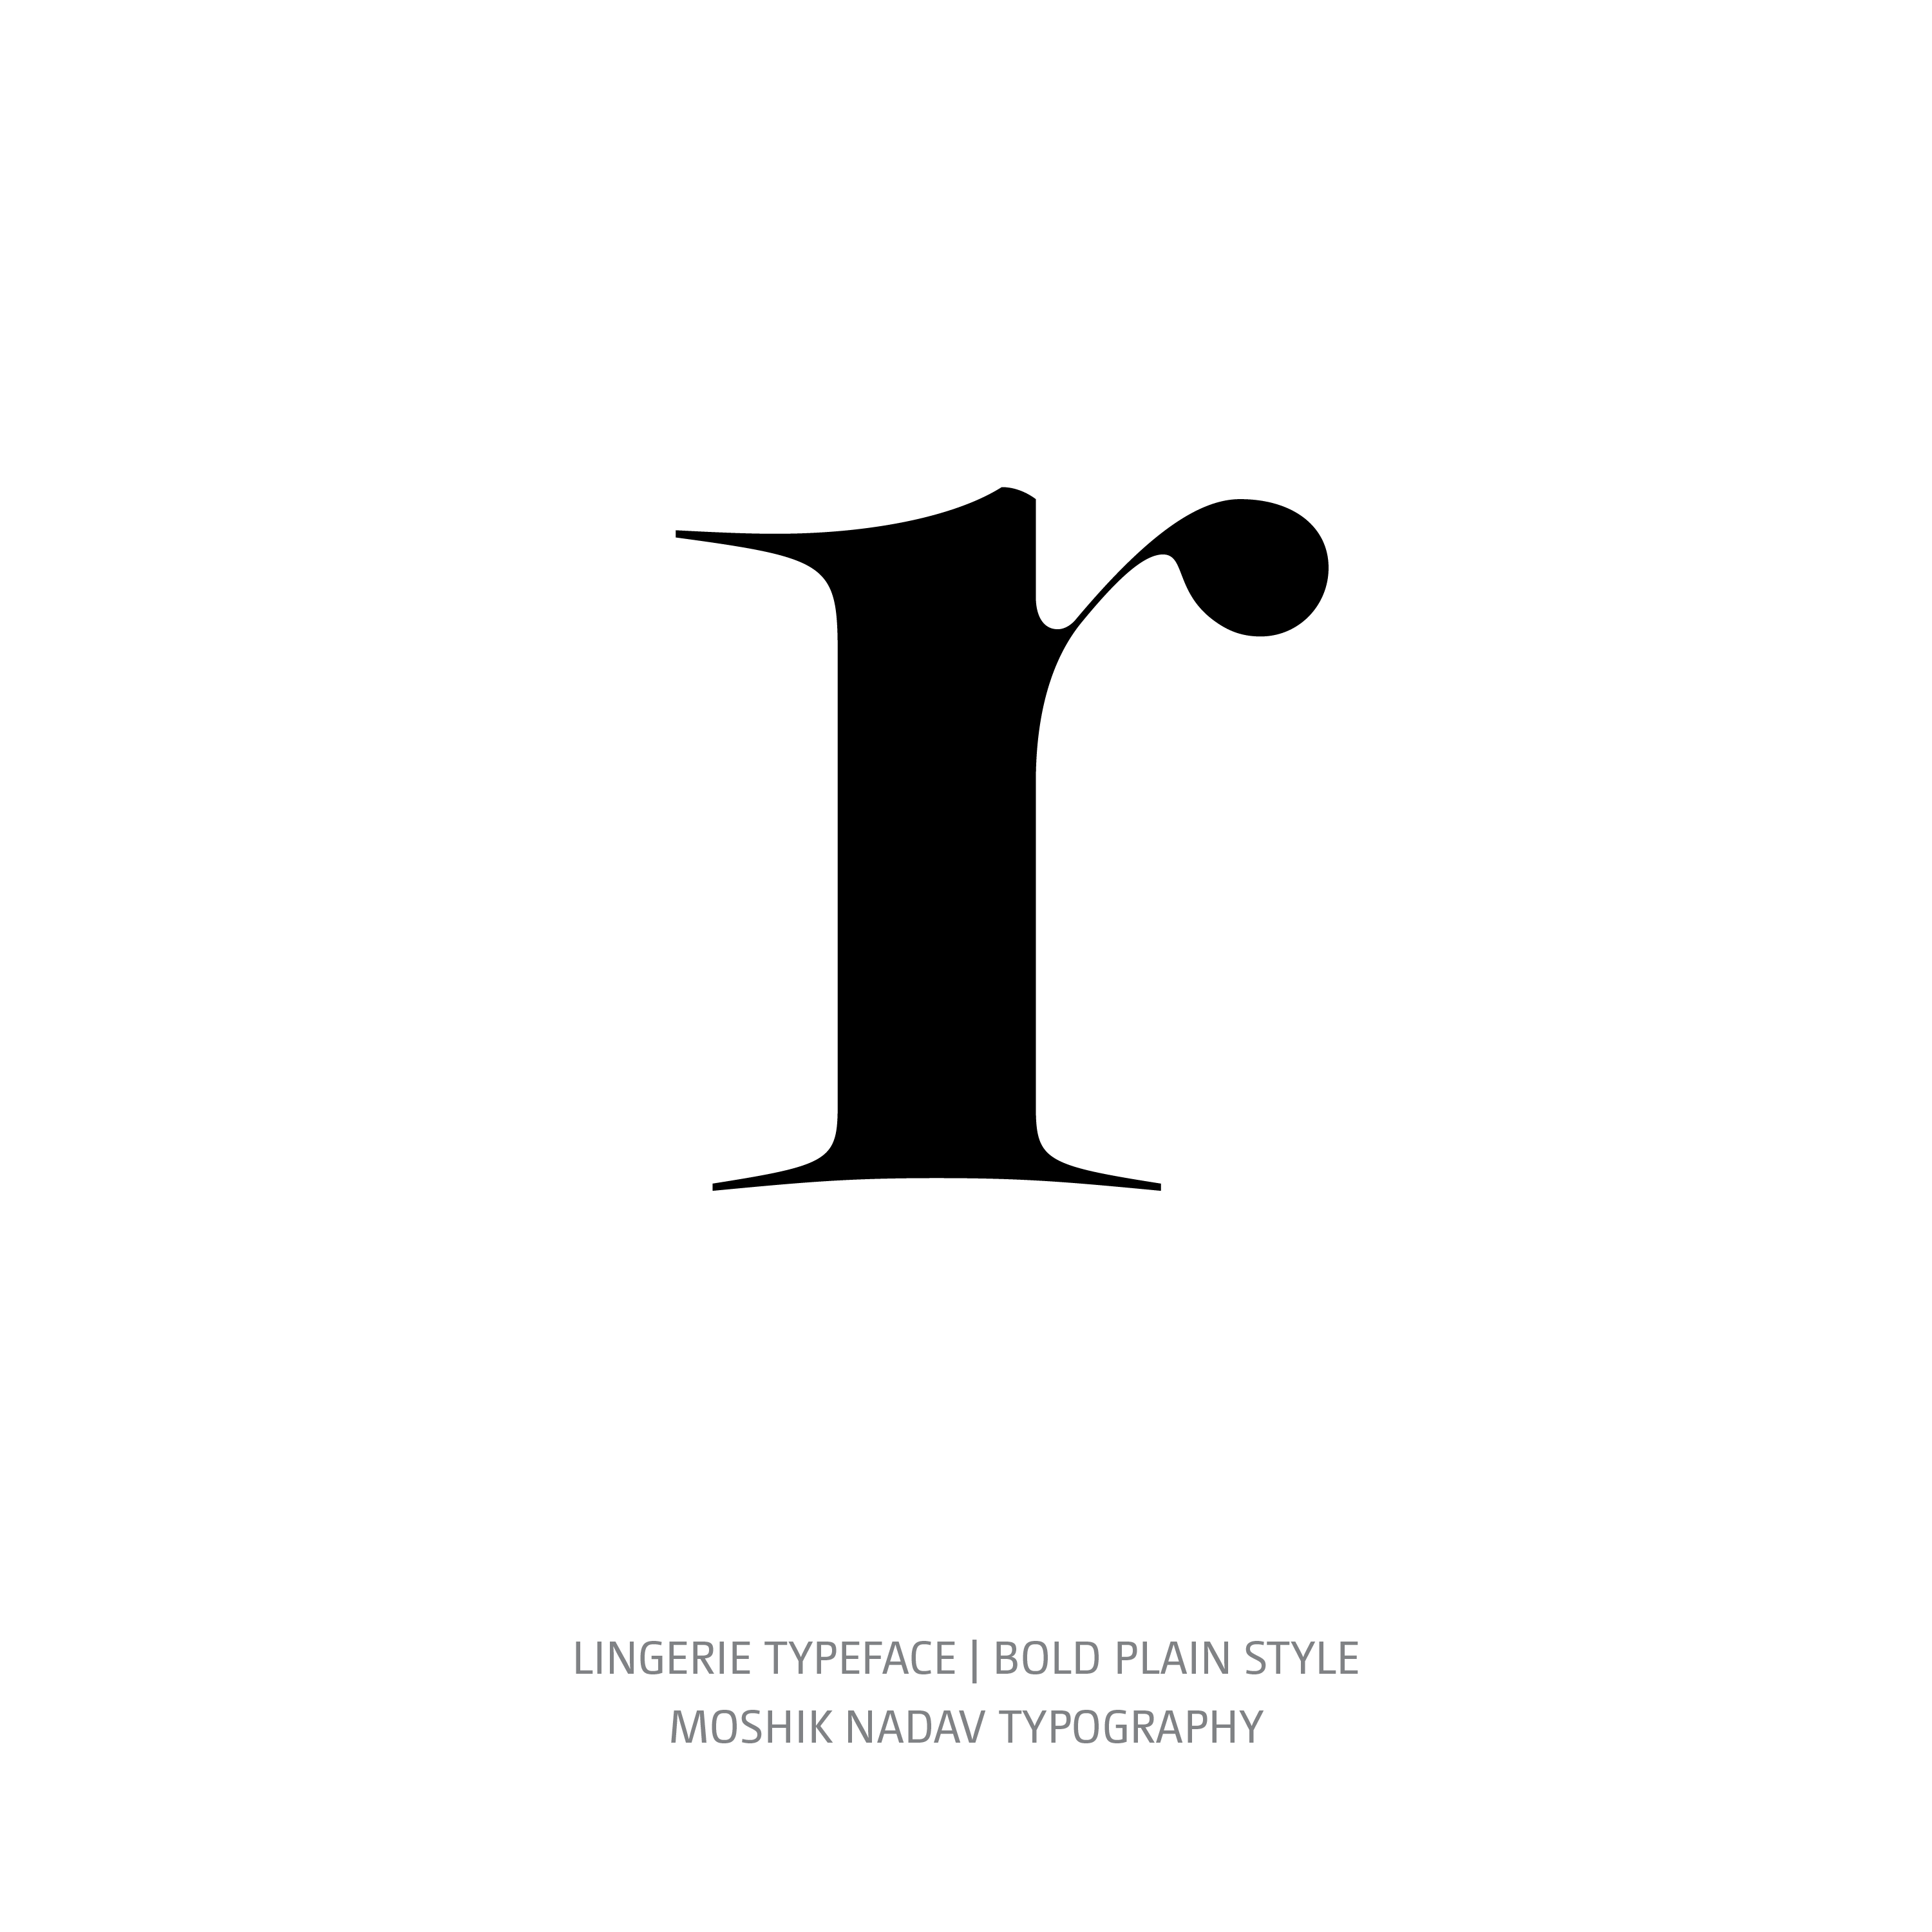 Lingerie Typeface Bold Plain r